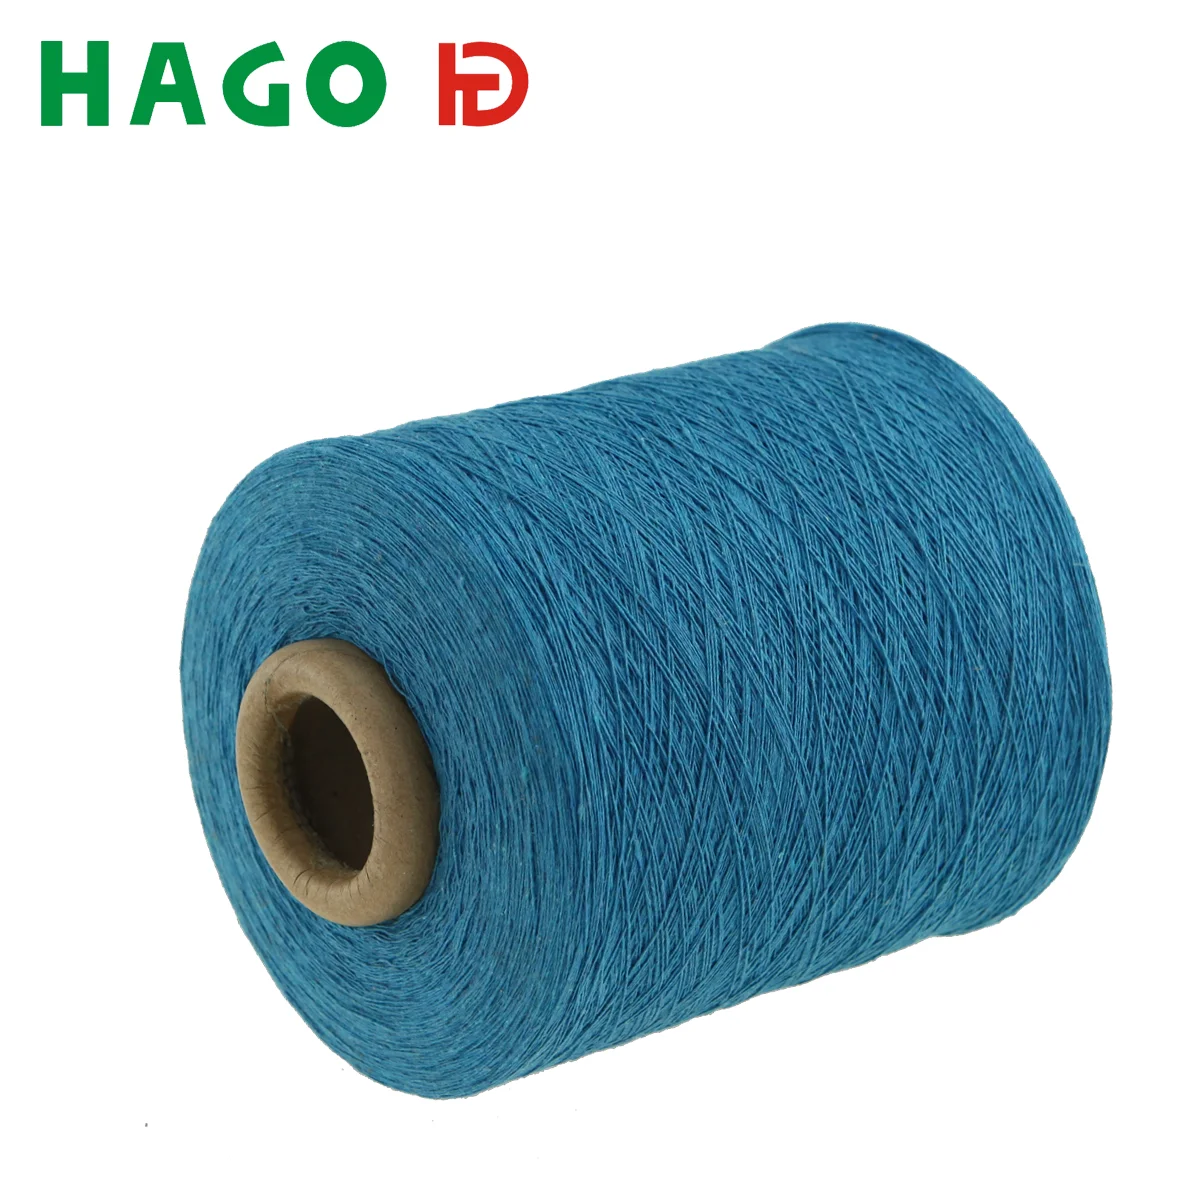 GRS certified Hago Open End Blended Yarn Weaving NE21 32 65/35 50/50 Cotton Polyester  Melange yarn for knitting